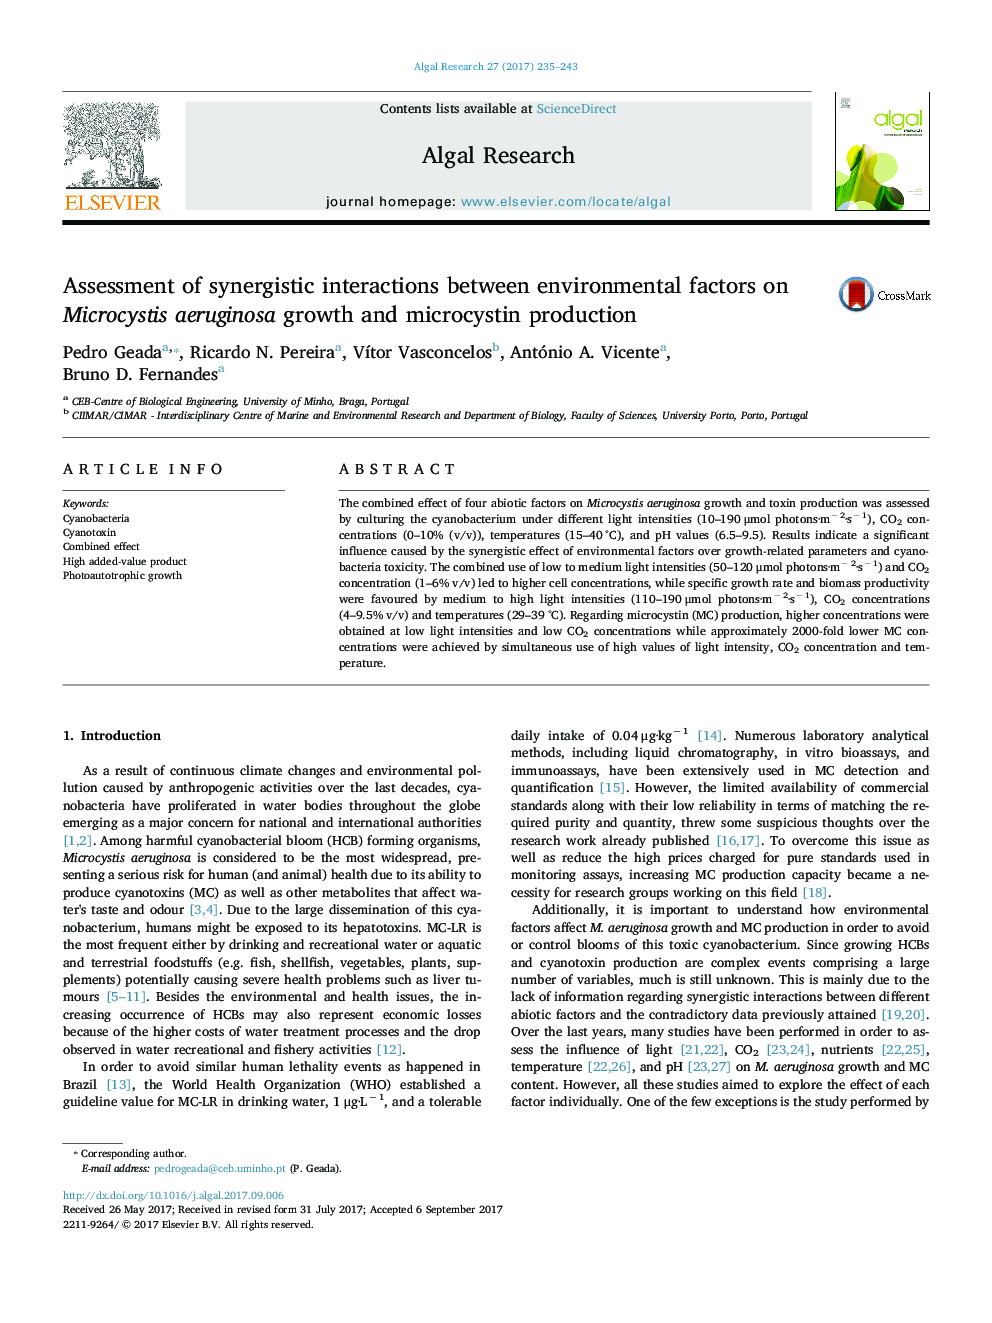 ارزیابی اثرات متقابل همبستگی بین عوامل محیطی بر رشد میکروزیستی آئروژینوزا و تولید میکرو سستین 